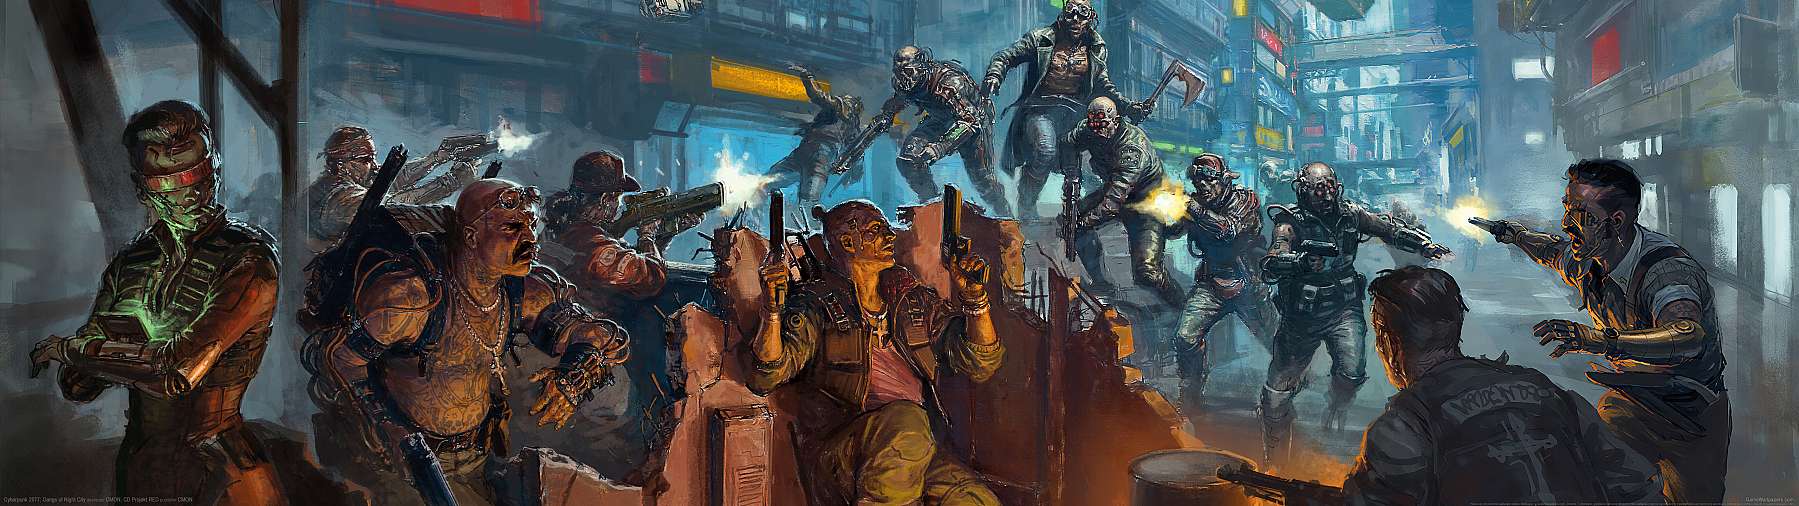 Cyberpunk 2077: Gangs of Night City fond d'écran